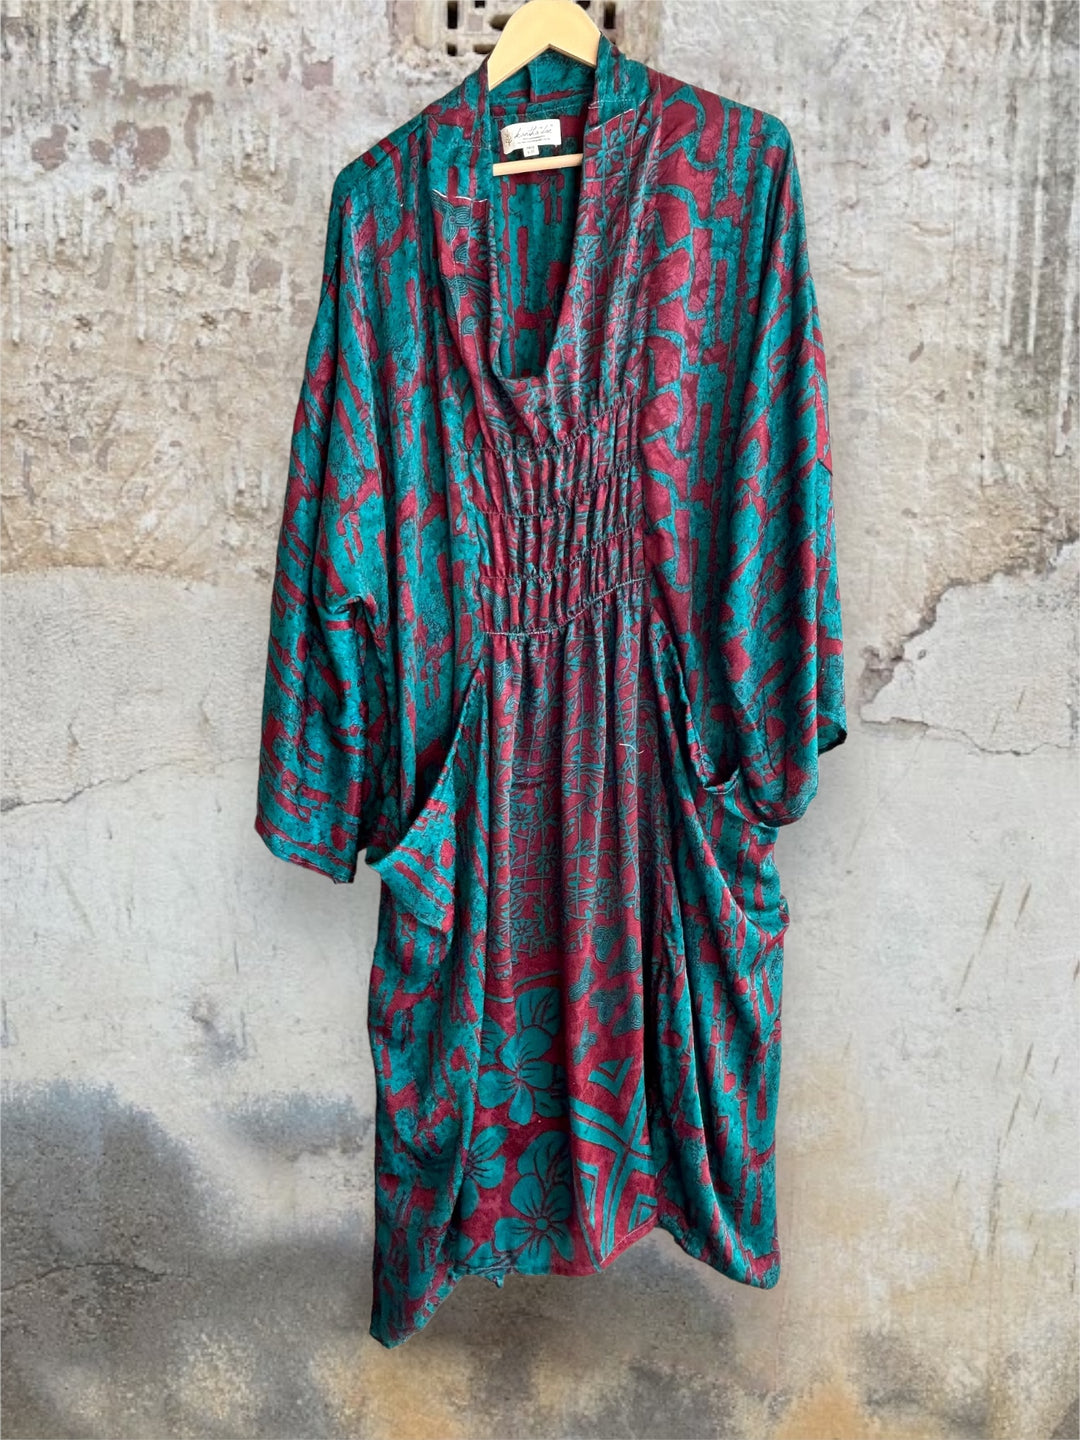 Ruched Dress 0424 108 - Kantha Bae